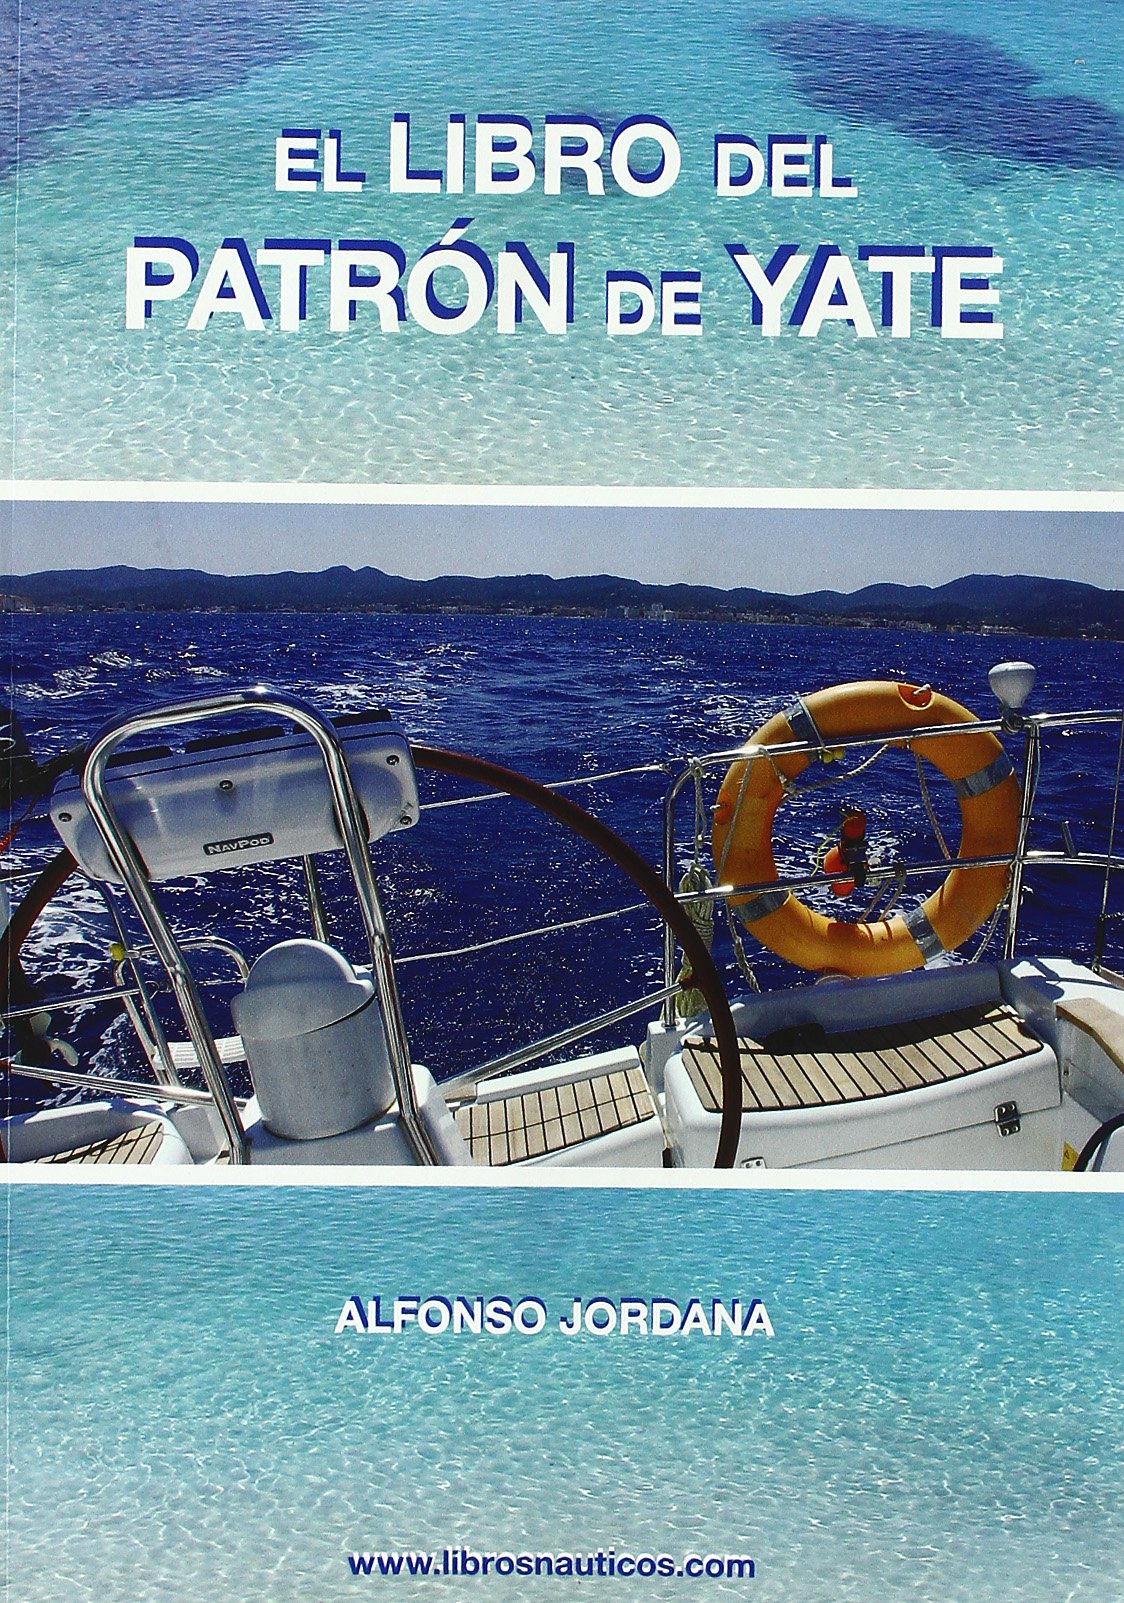 Alfonso Gómez-Jordana Díaz-Merry: El libro del patrón de yate (Paperback)